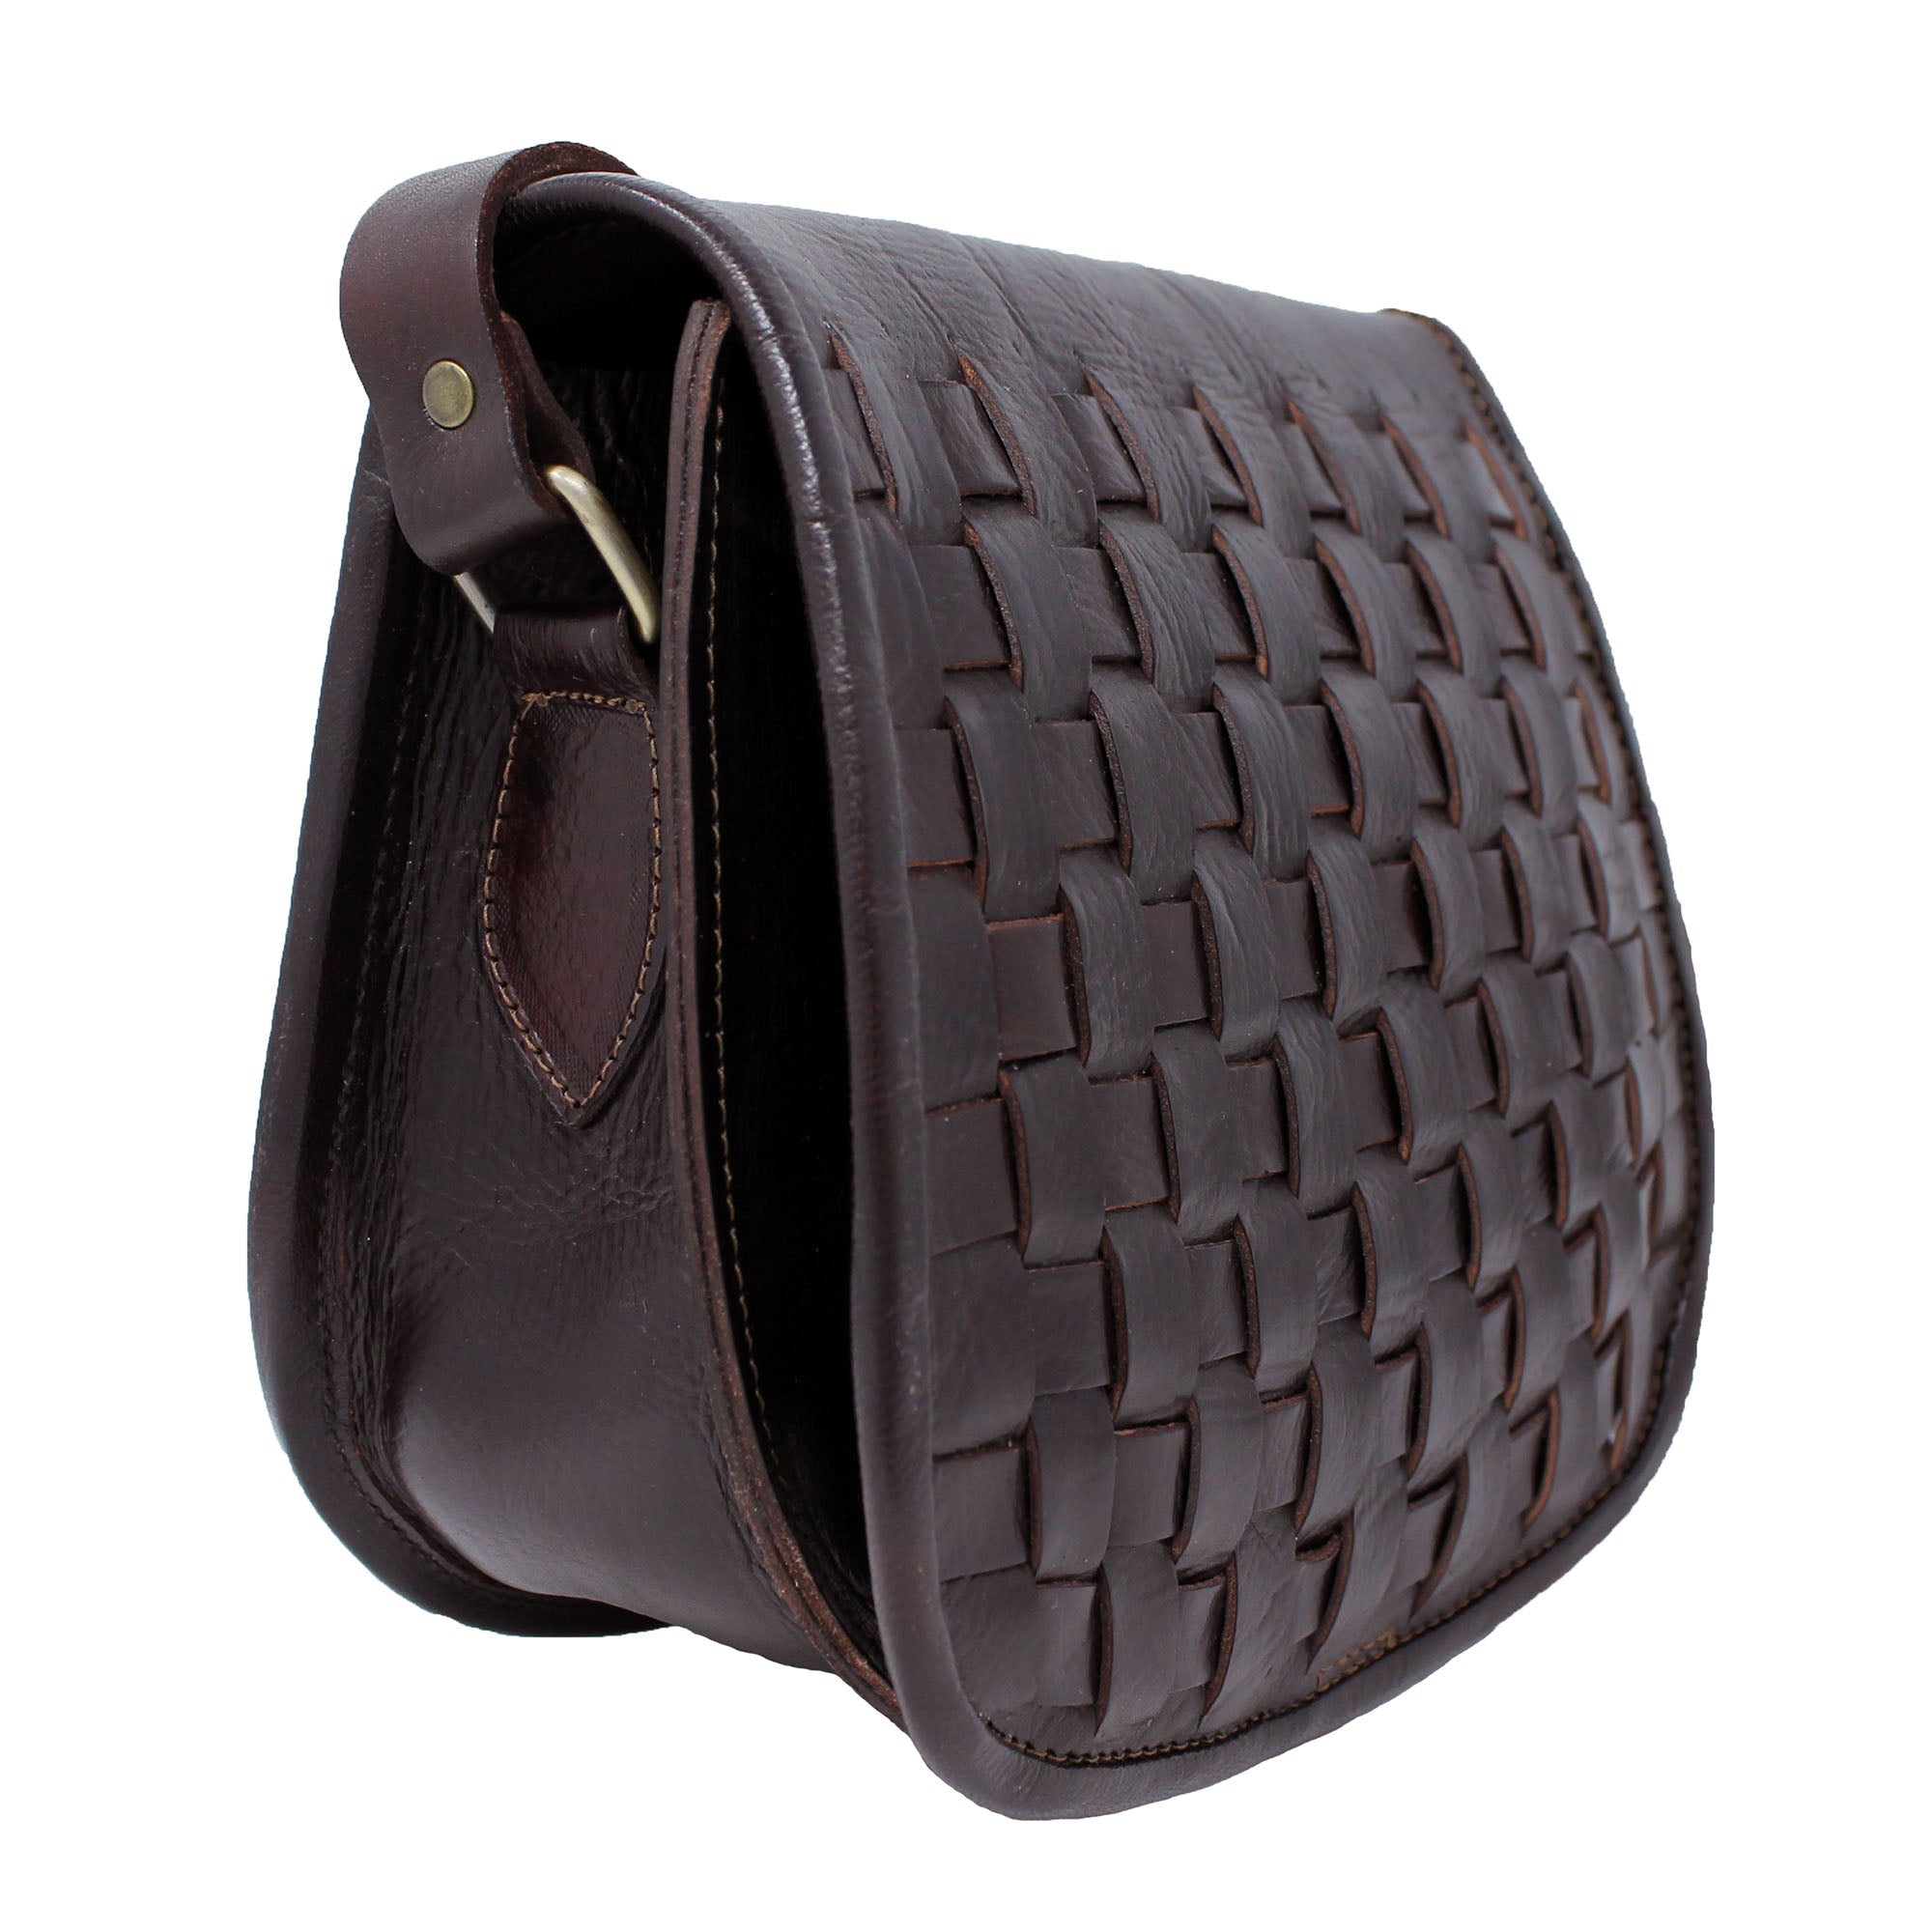 Leather Sam Woven Saddle Bag -Chocolate - Artisan Stories